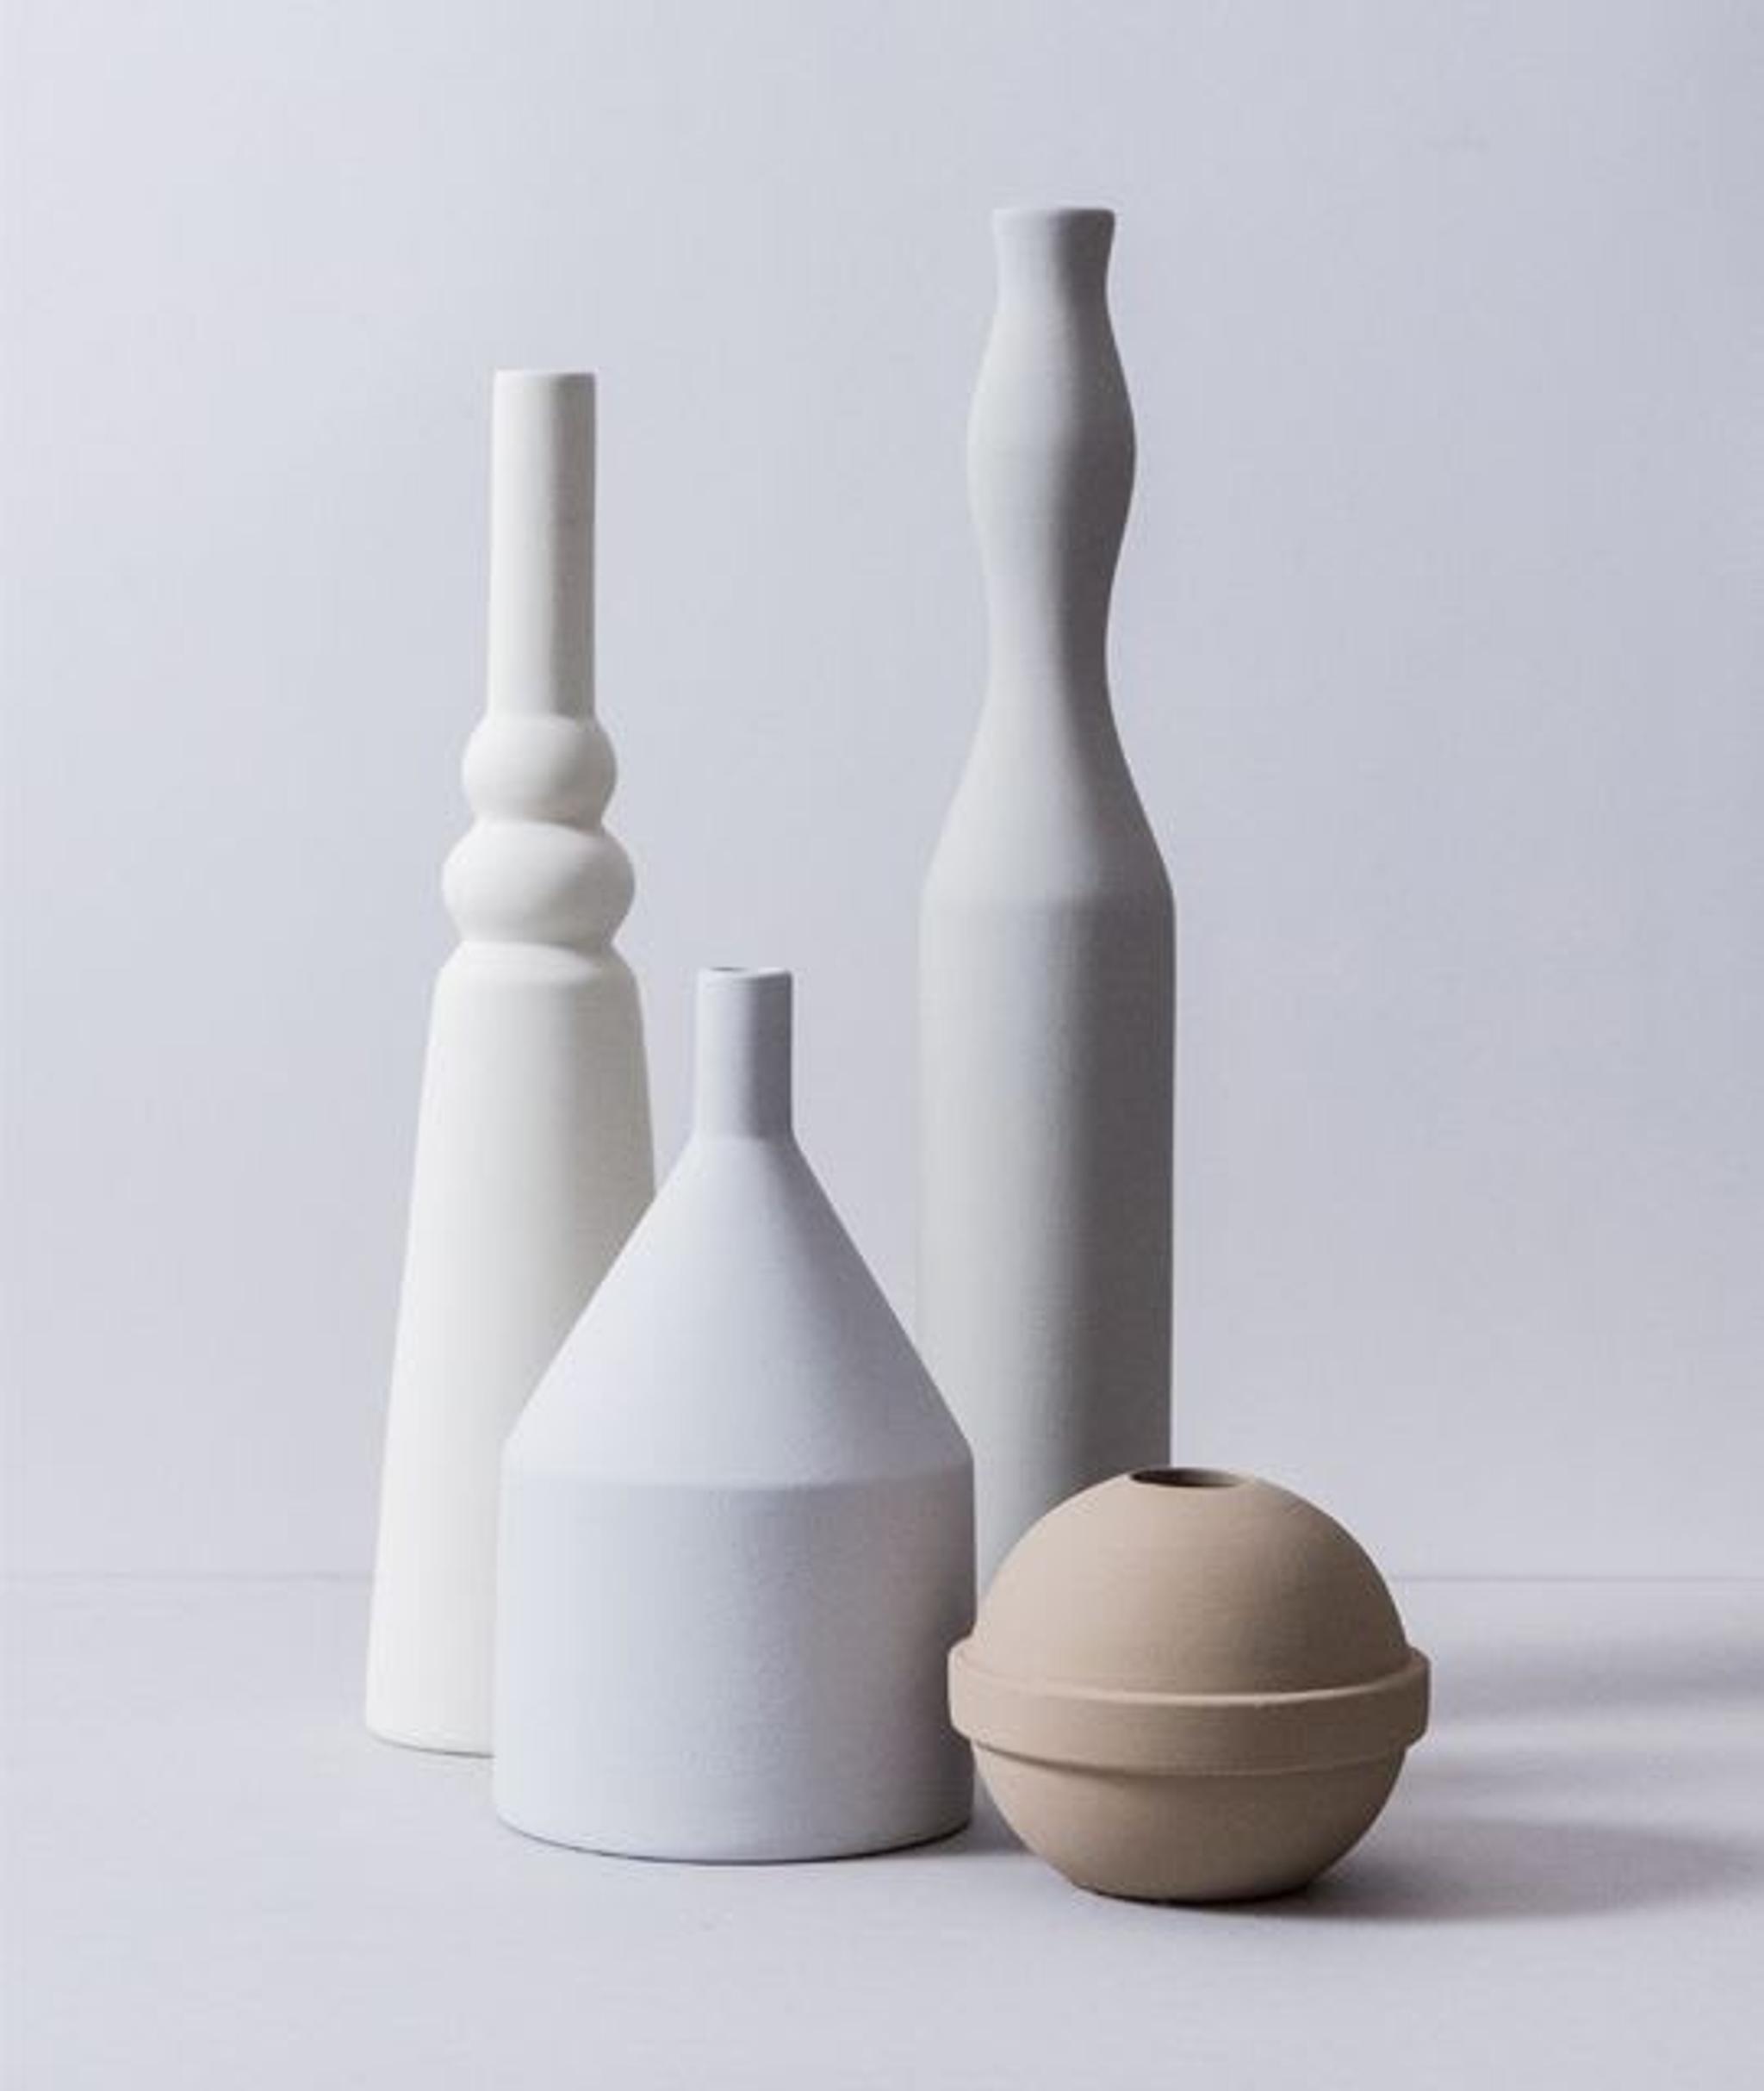 Natura Morta 4 - Vase Set #1 by Sonia Pedrazzini